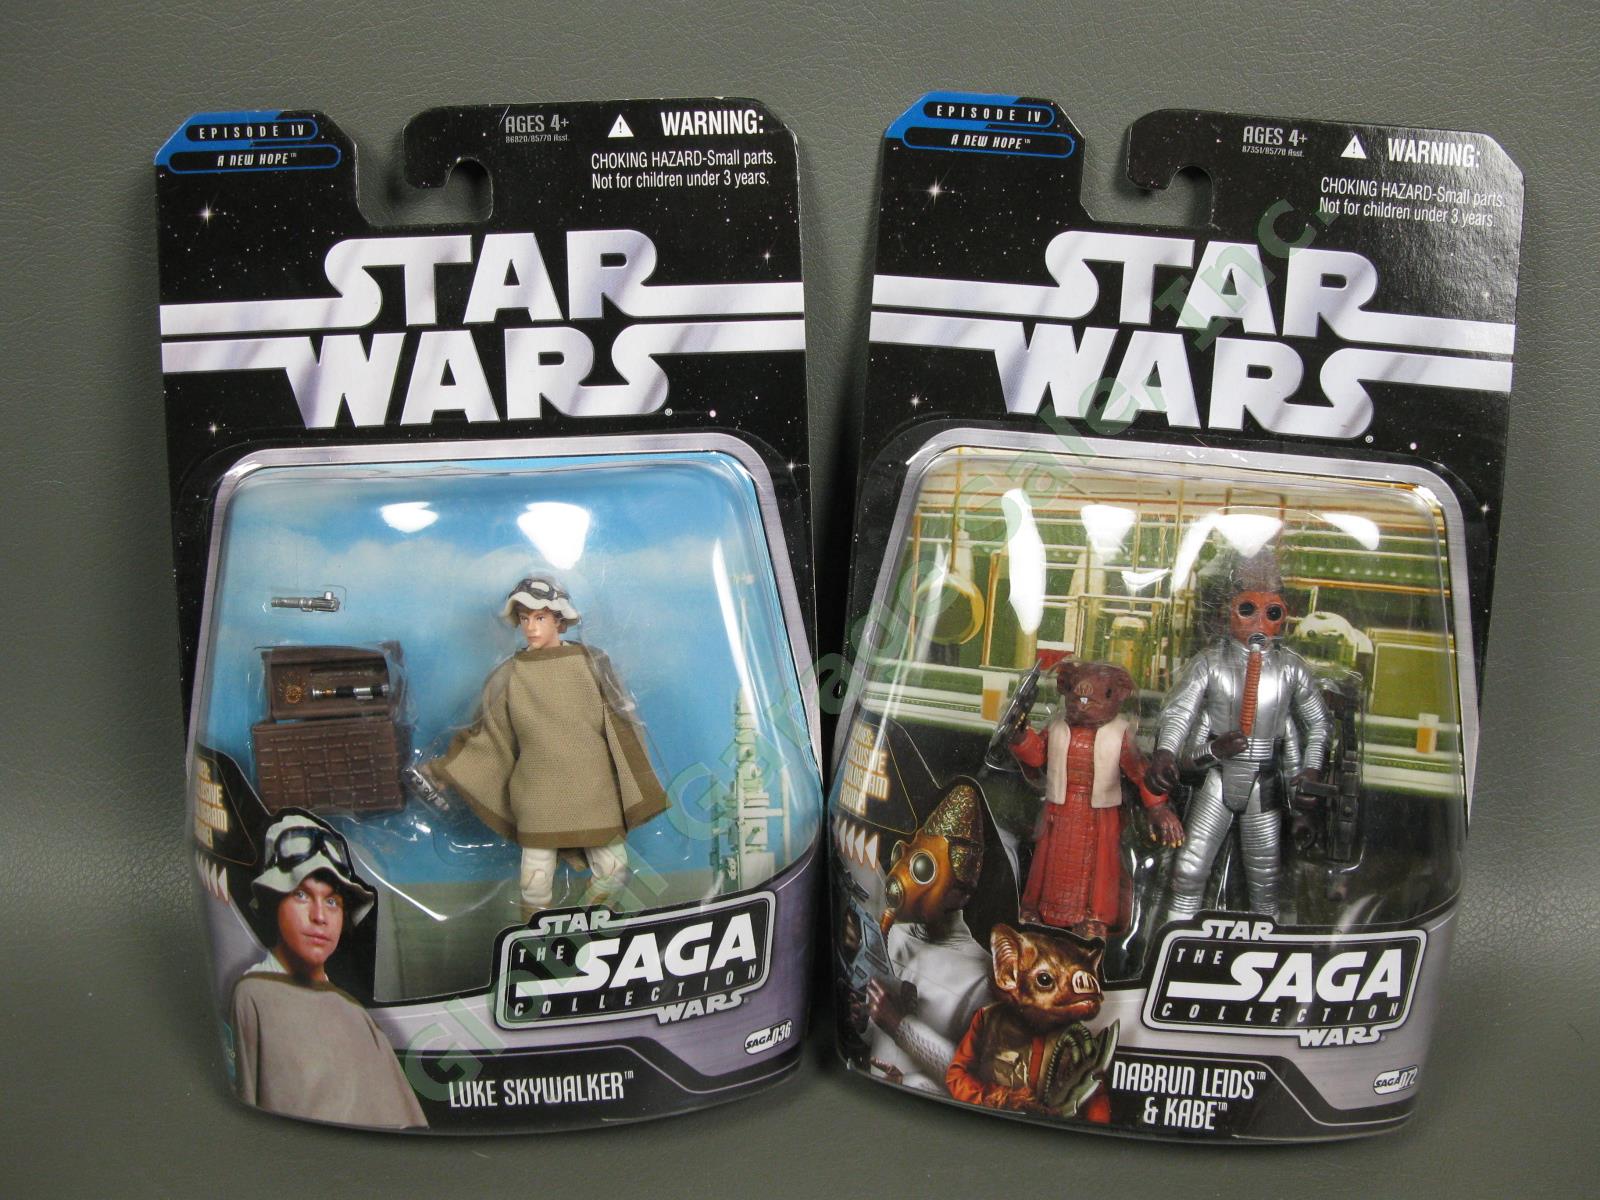 Star Wars Original Trilogy Figure Collection Skywalker Solo Vader Palpatine Lot 3